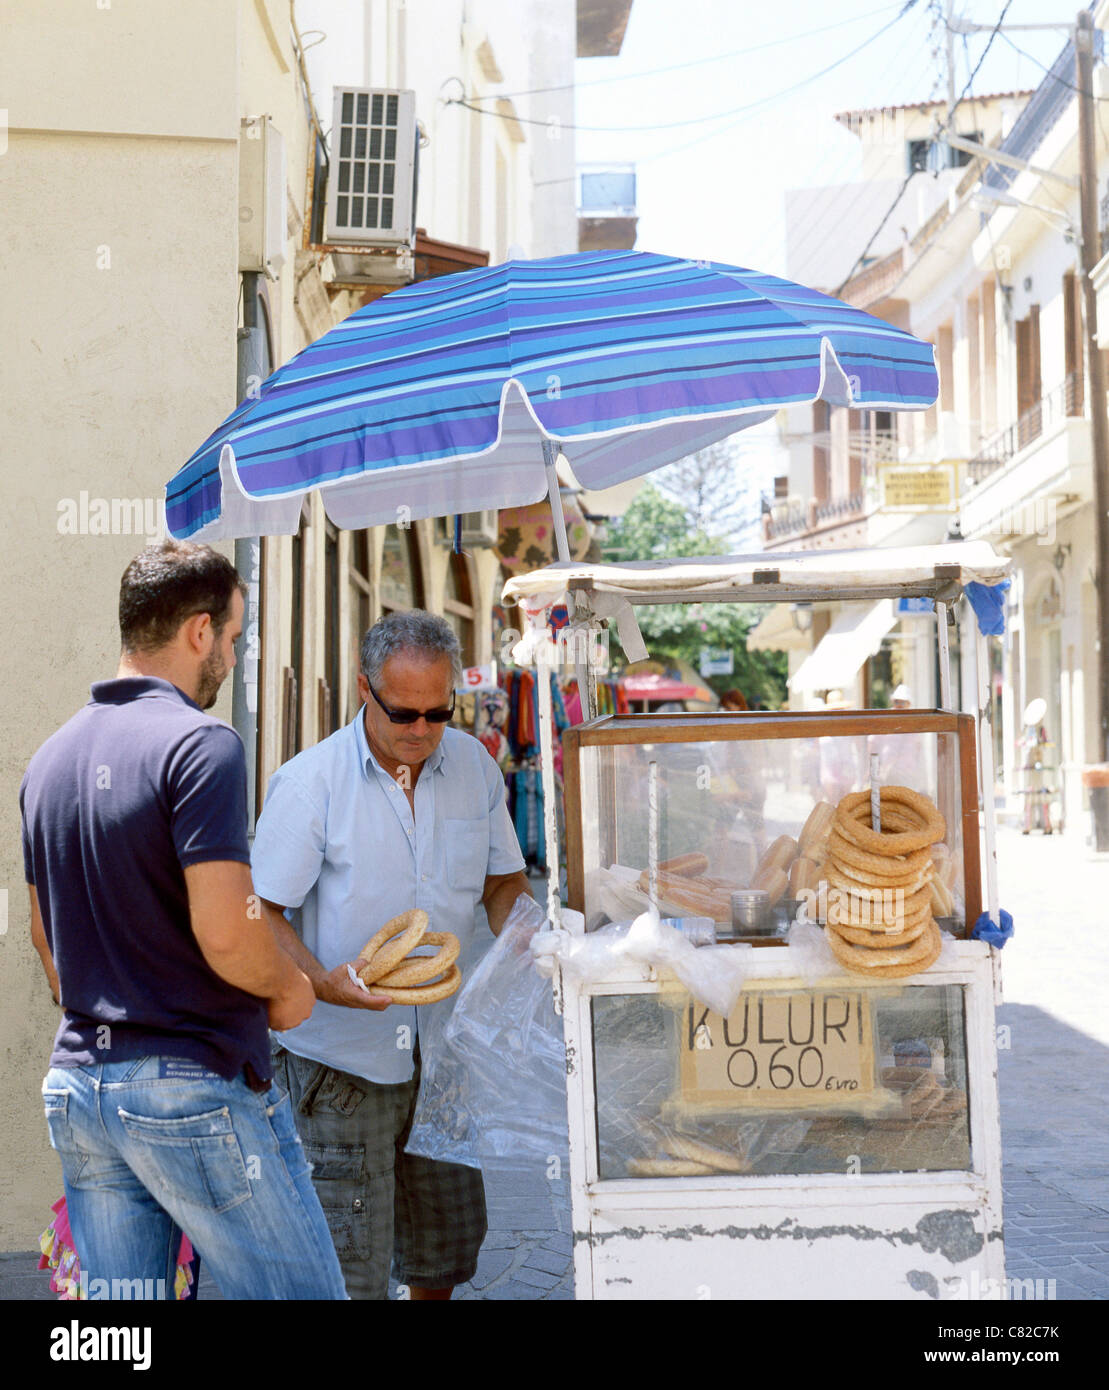 Un venditore ambulante in Rethymnon, Creta, vende koulouri - semi di sesamo incrostati di pane cerchi - per un cliente. Foto Stock